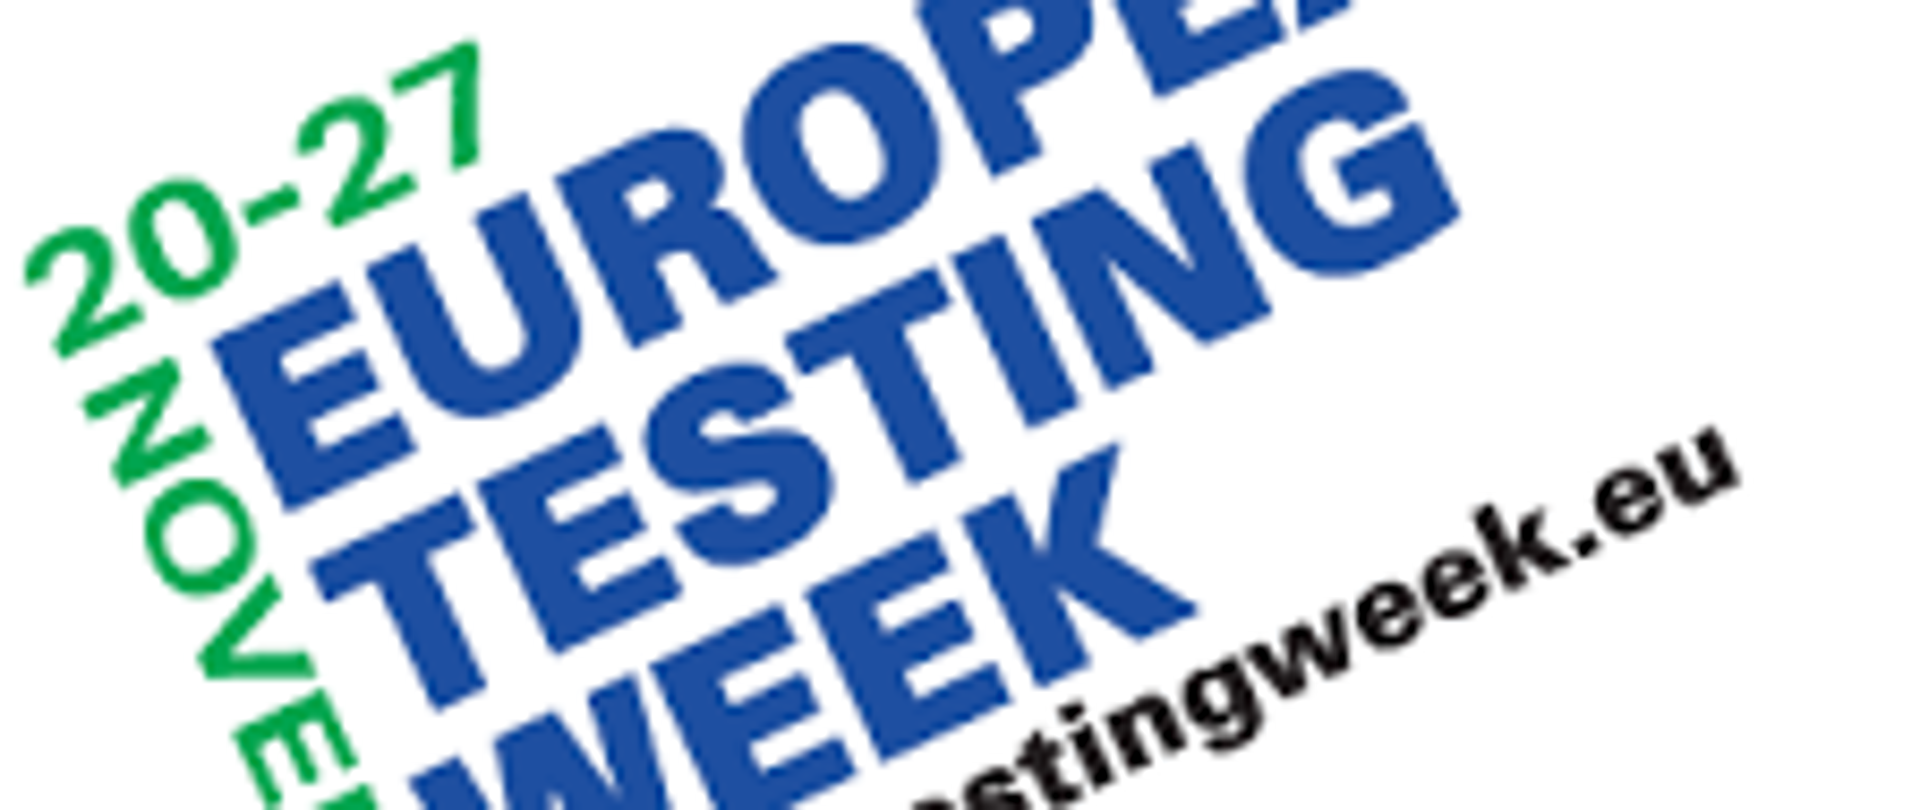 Ilustracja przedstawia tekst: European Testing Week w kolorze granatowym, 20-27 November 2020 w kolorze zielonym, www.testingweek.eu w kolorze czarnym.